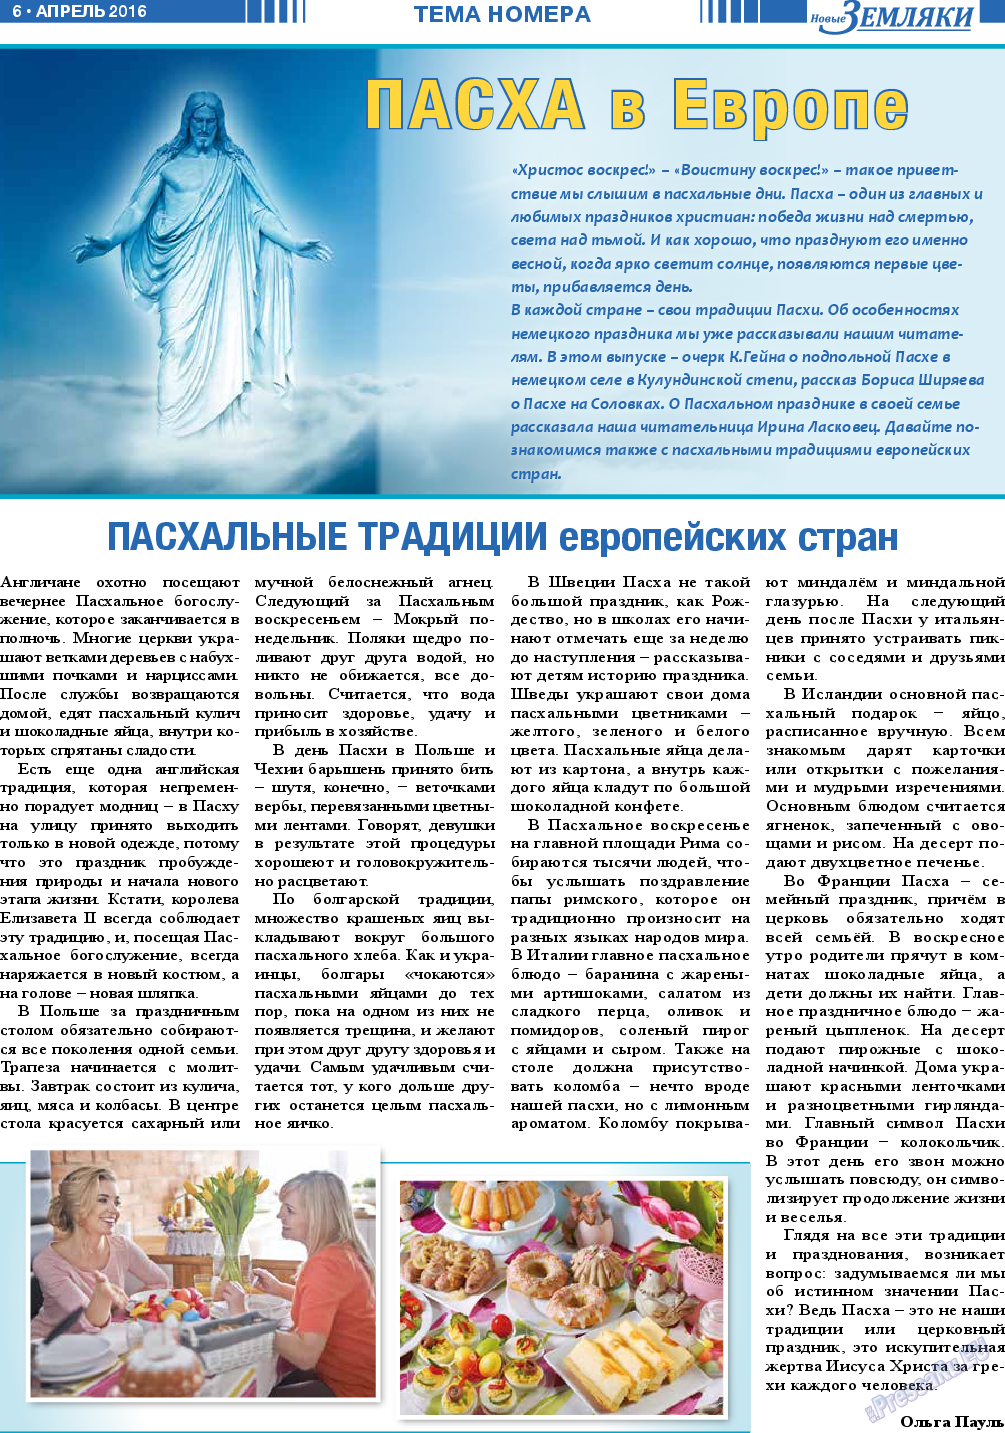 Новые Земляки, газета. 2016 №4 стр.6